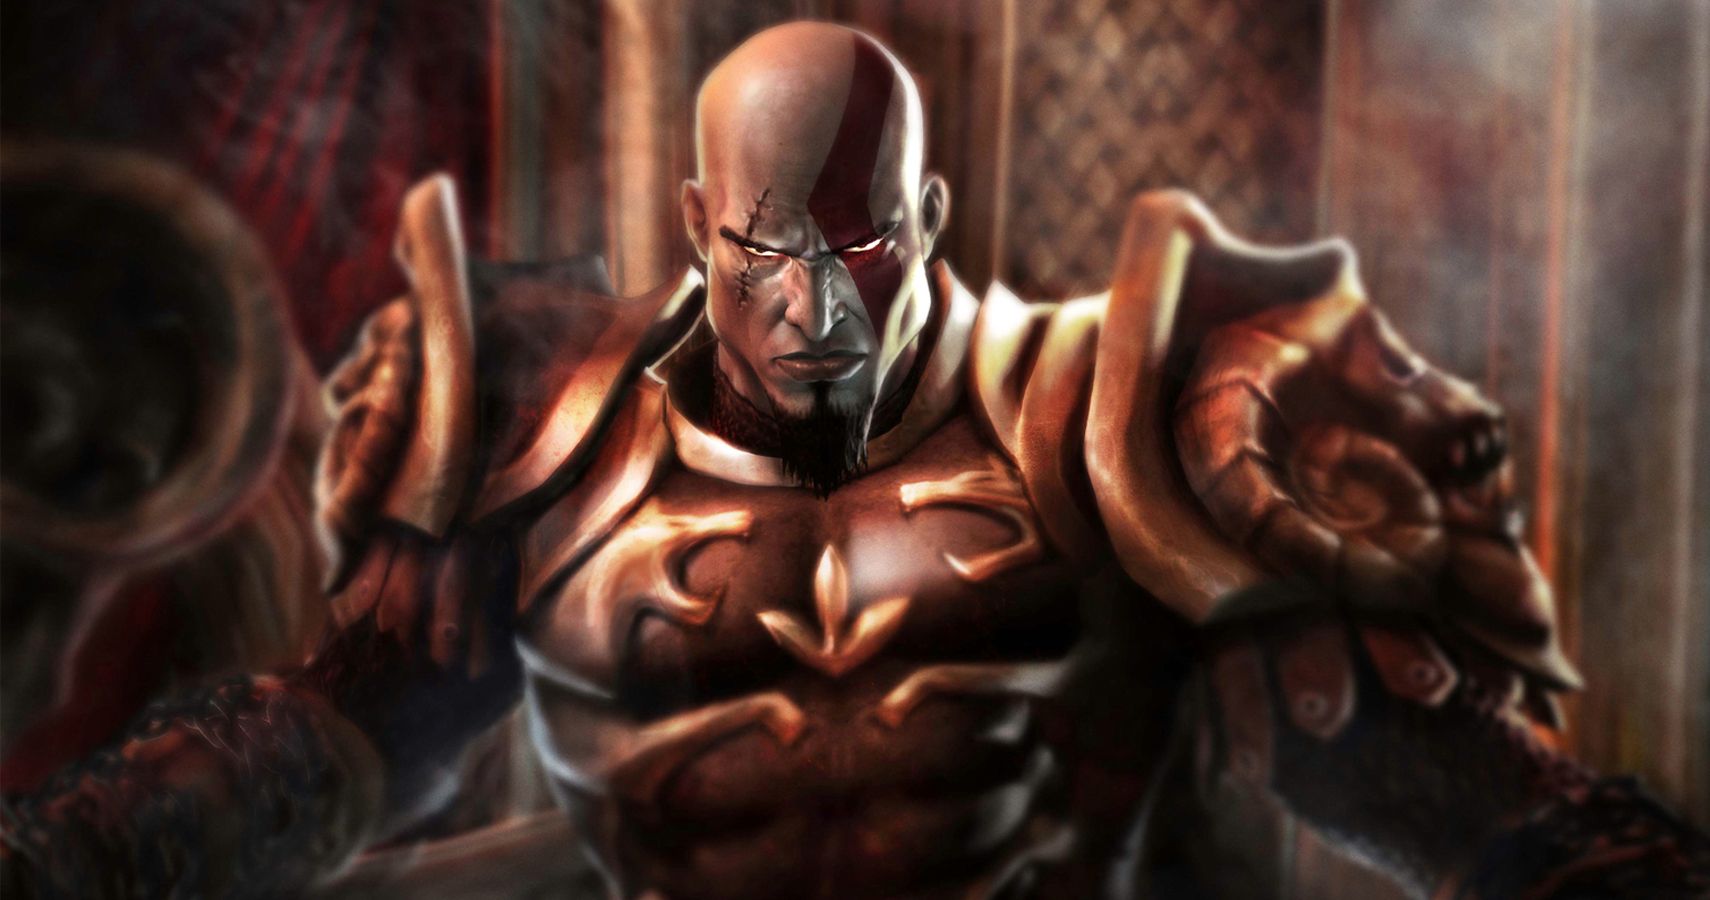 Kratos NÃO TEM CHANCE! ALTURA ABSURDA de THOR e Outros Personagens